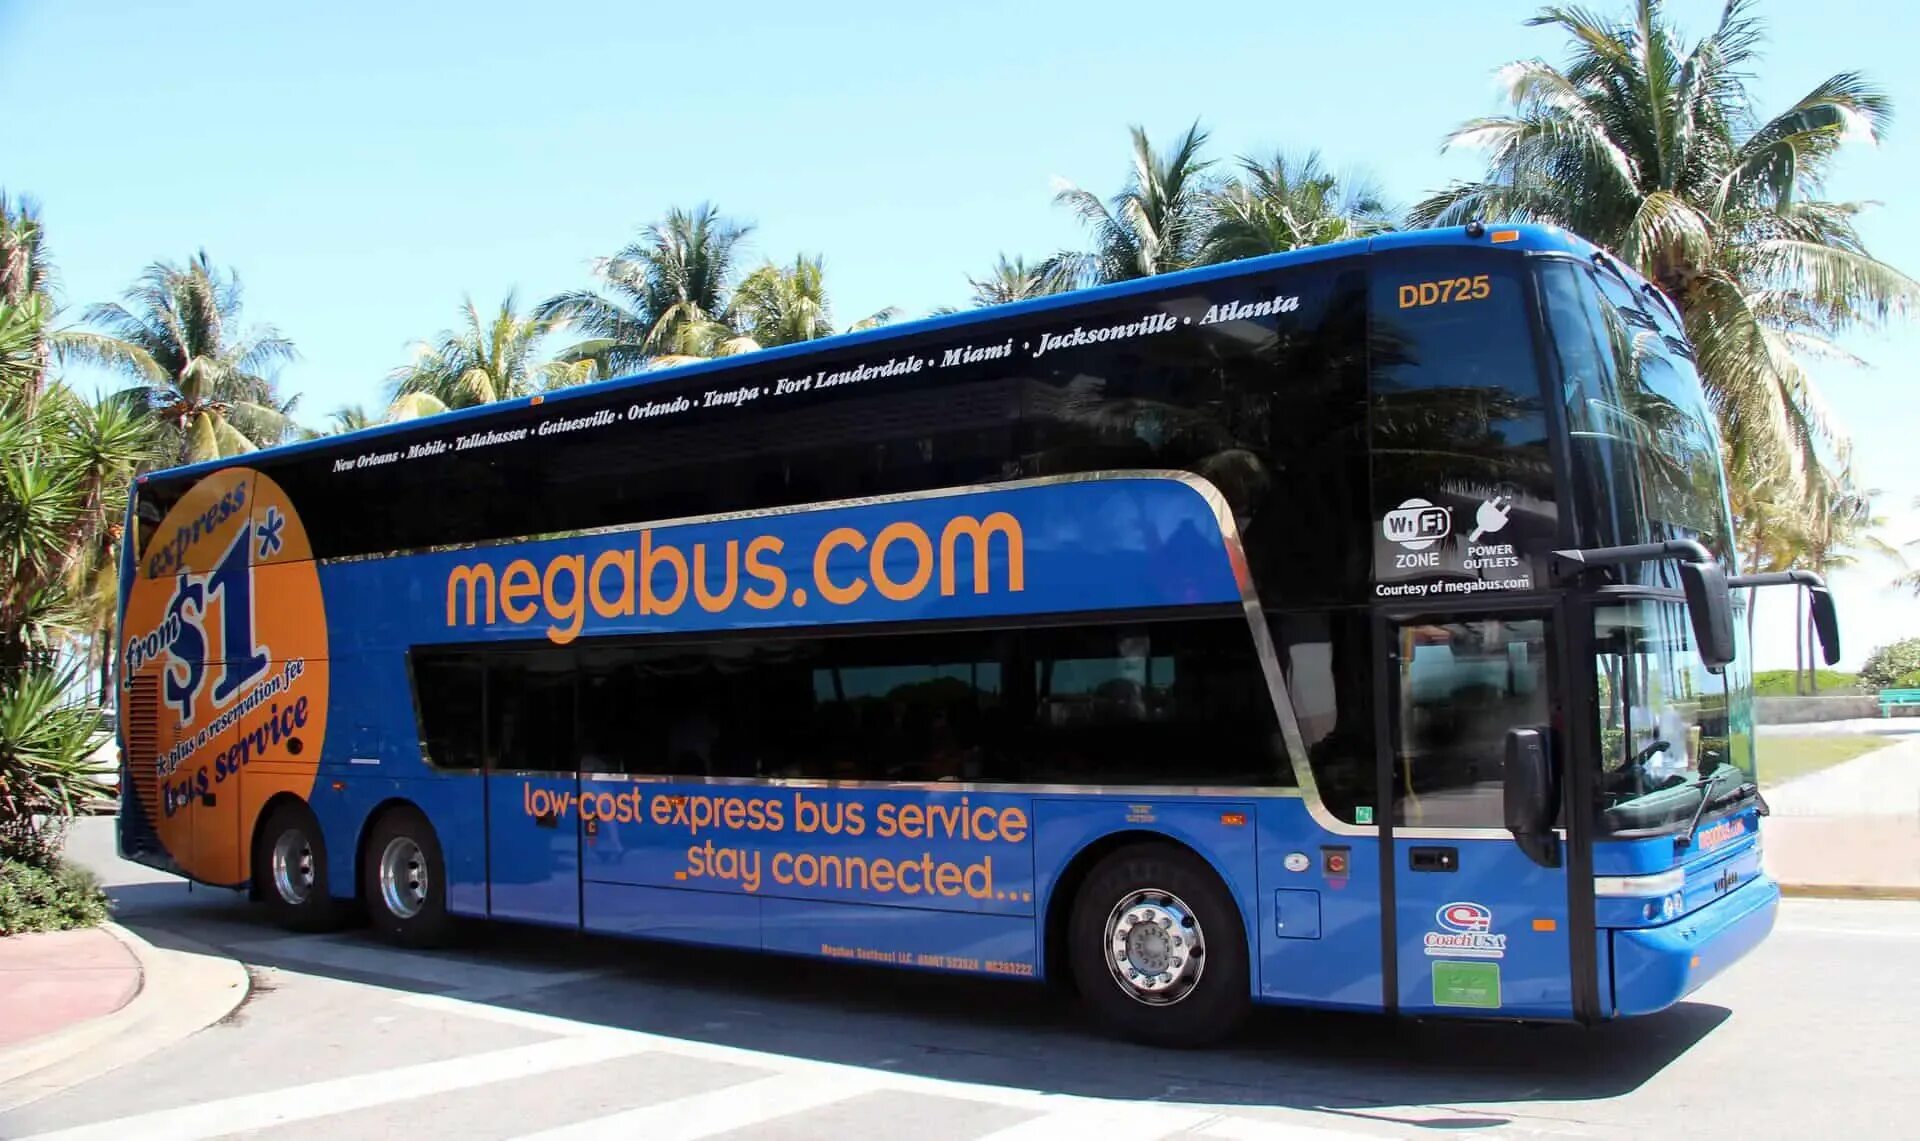 Ной автобус купить билет. Туристический автобус. Американские туристические автобусы. Городские туристические автобусы. Megabus.